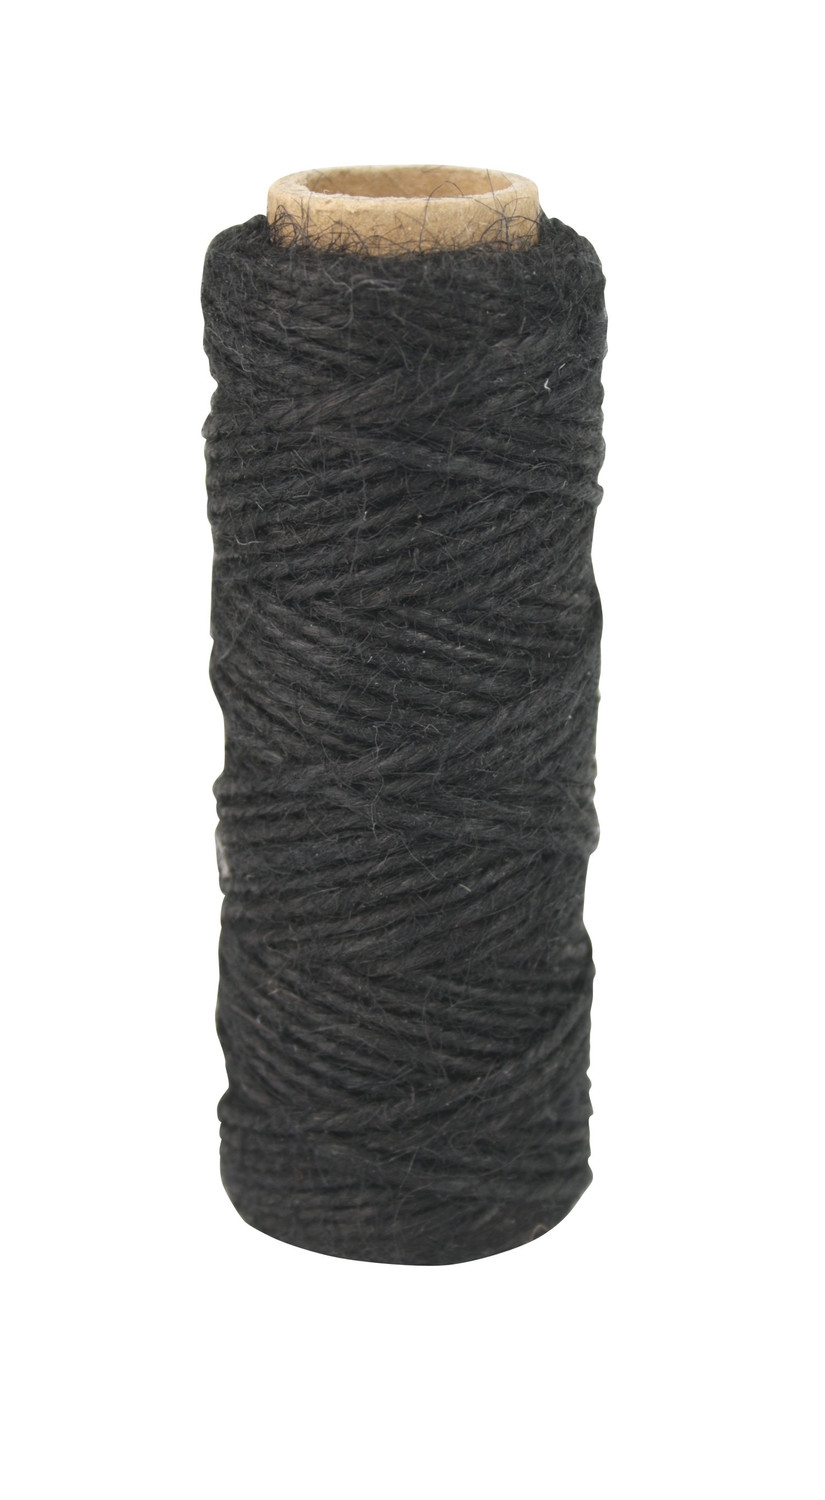 Ficelle Cordelette en coton Noir 2 mm x 30 m - MegaCrea DIY ref 4917